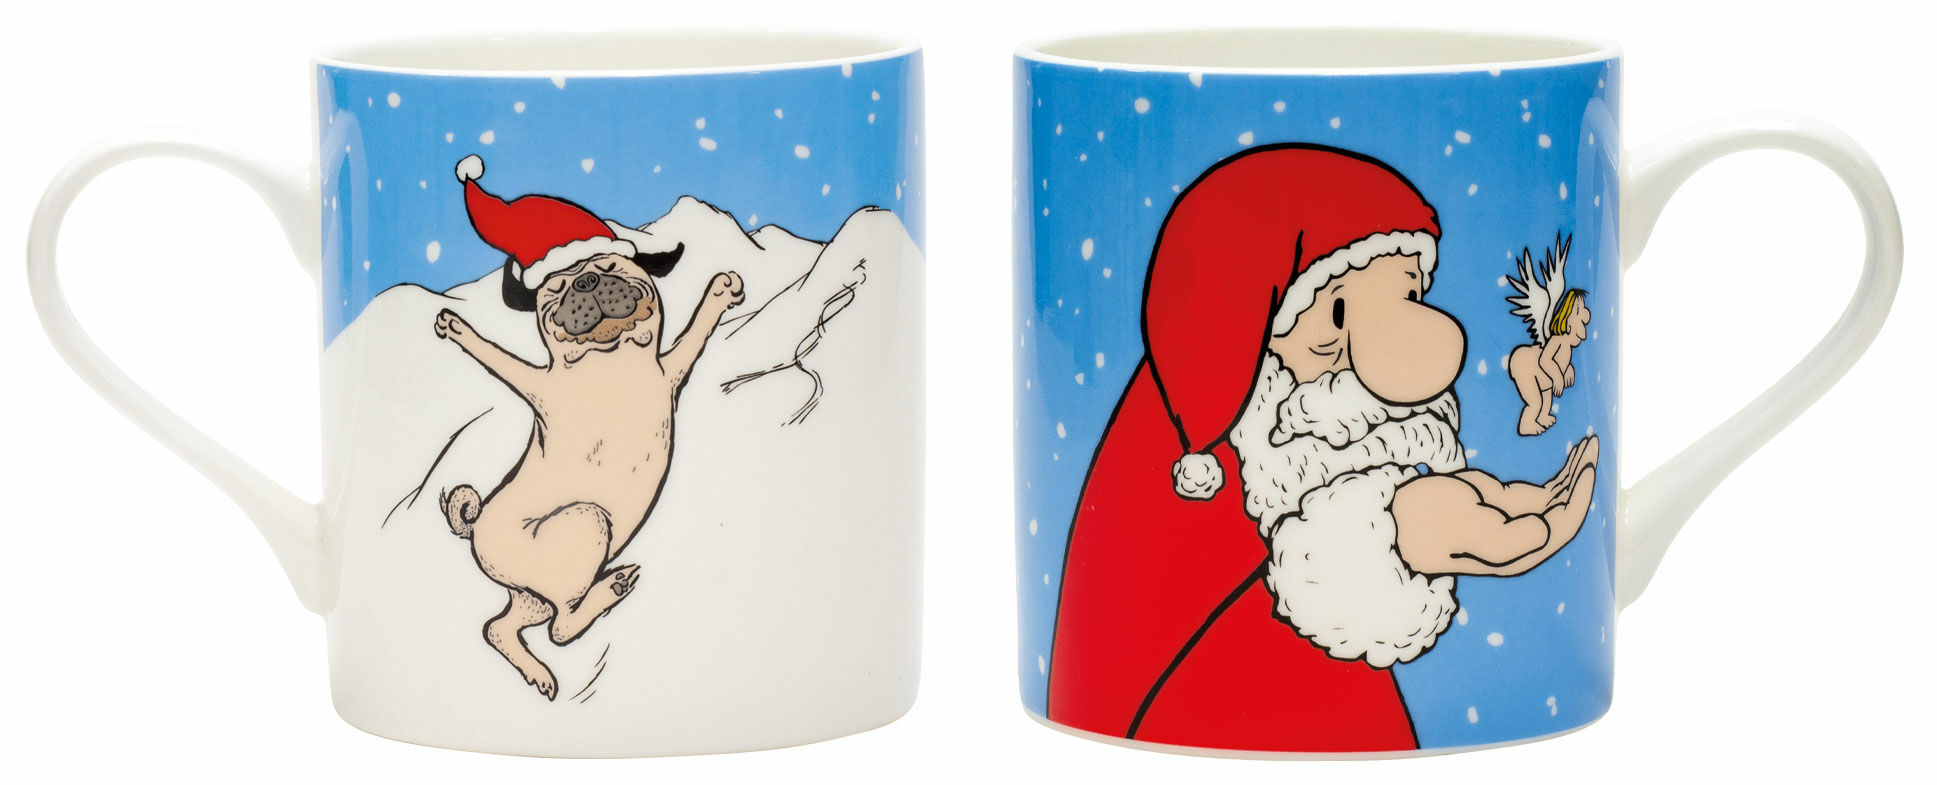 Sæt med 2 krus med kunstnerens motiver "Christmas Pug" & "Santa Claus", porcelæn von Loriot